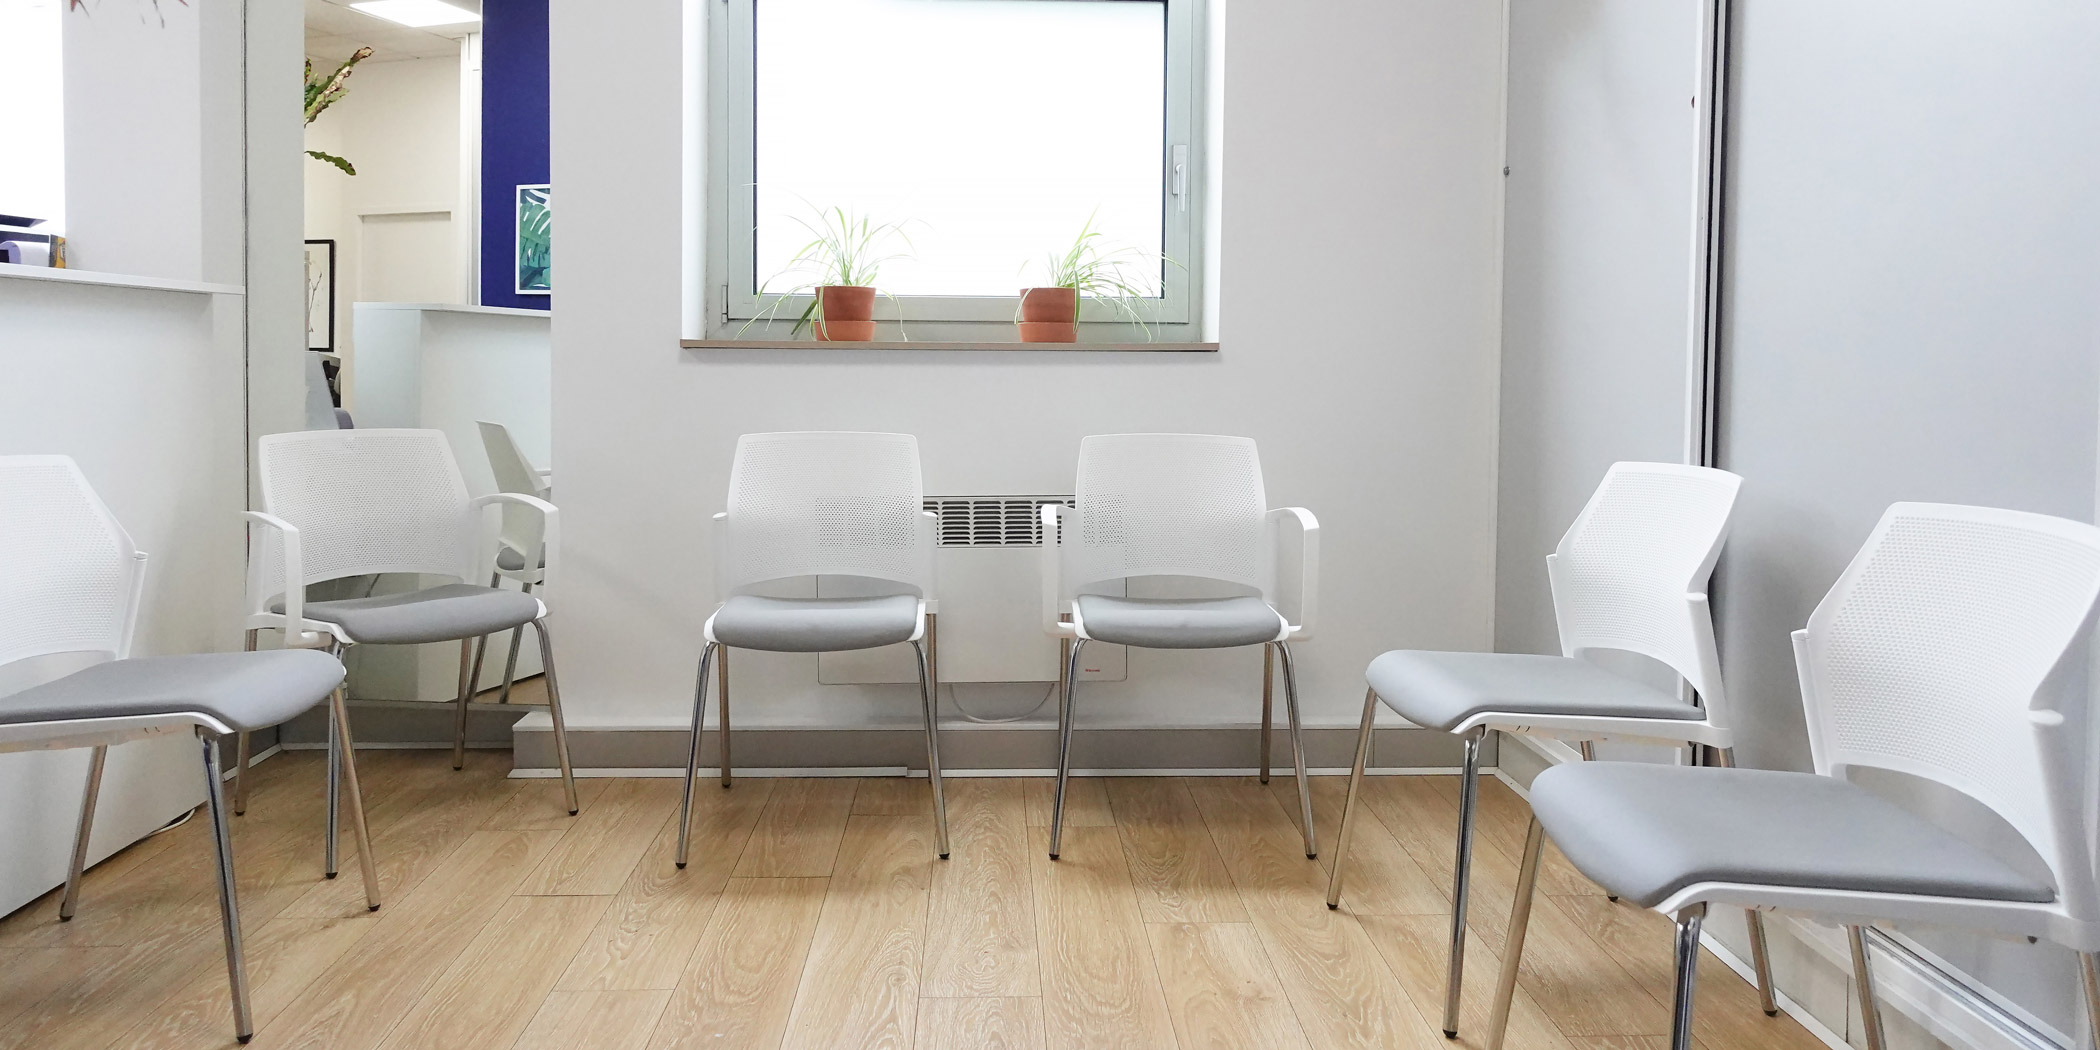 Salle d'attente - chaises visiteurs dans un cabinet paramédical à Lyon